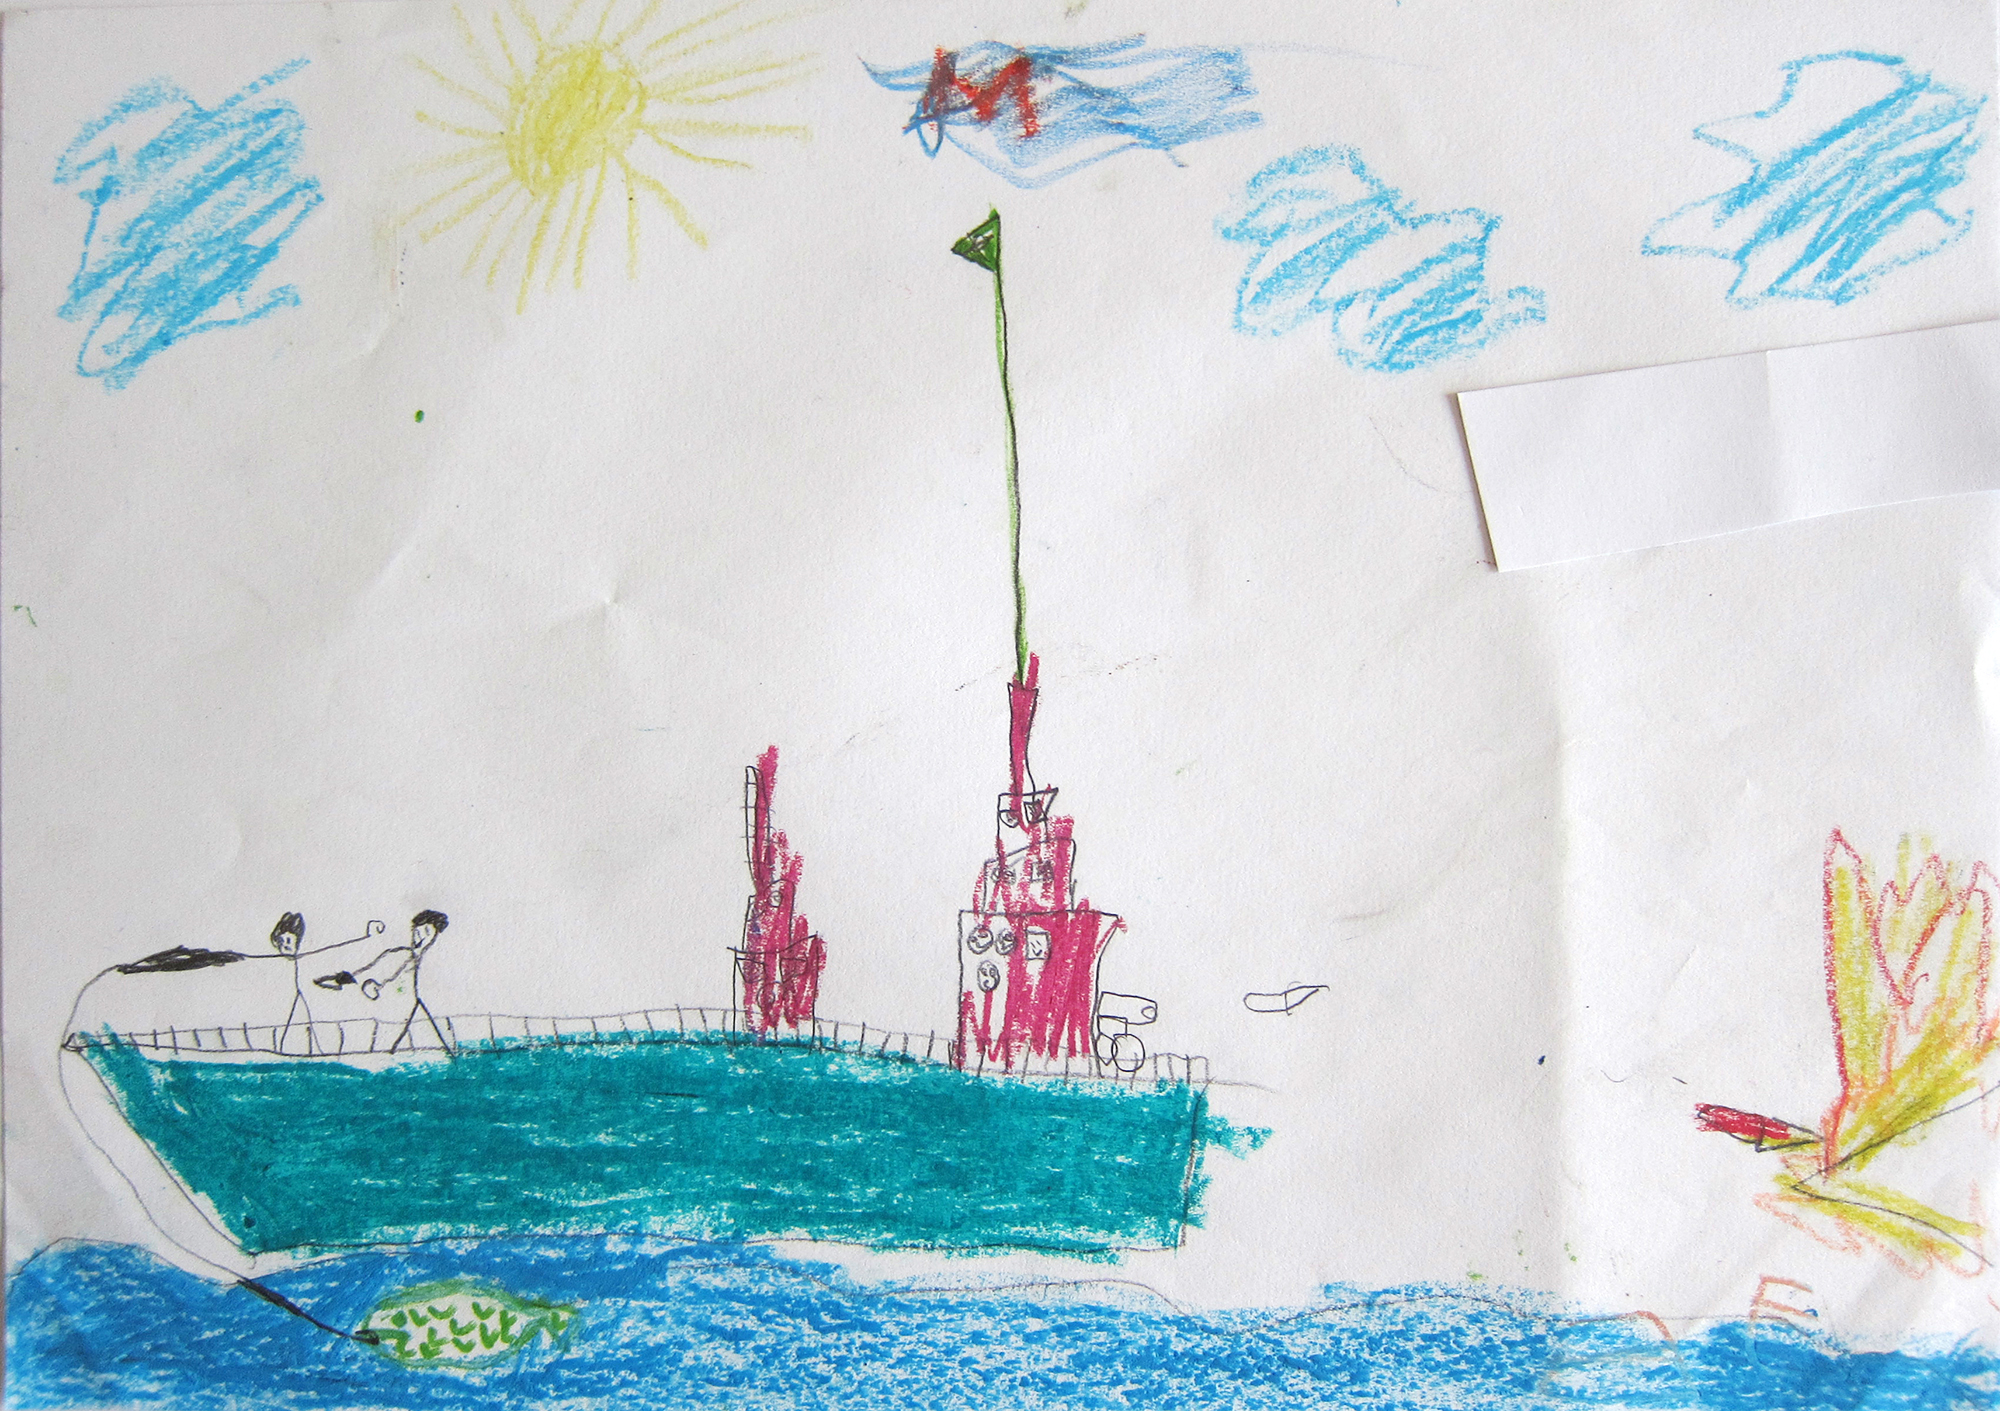 Schiff mit Kanone, gezeichnet von einem Jungen im Primarschulalter.